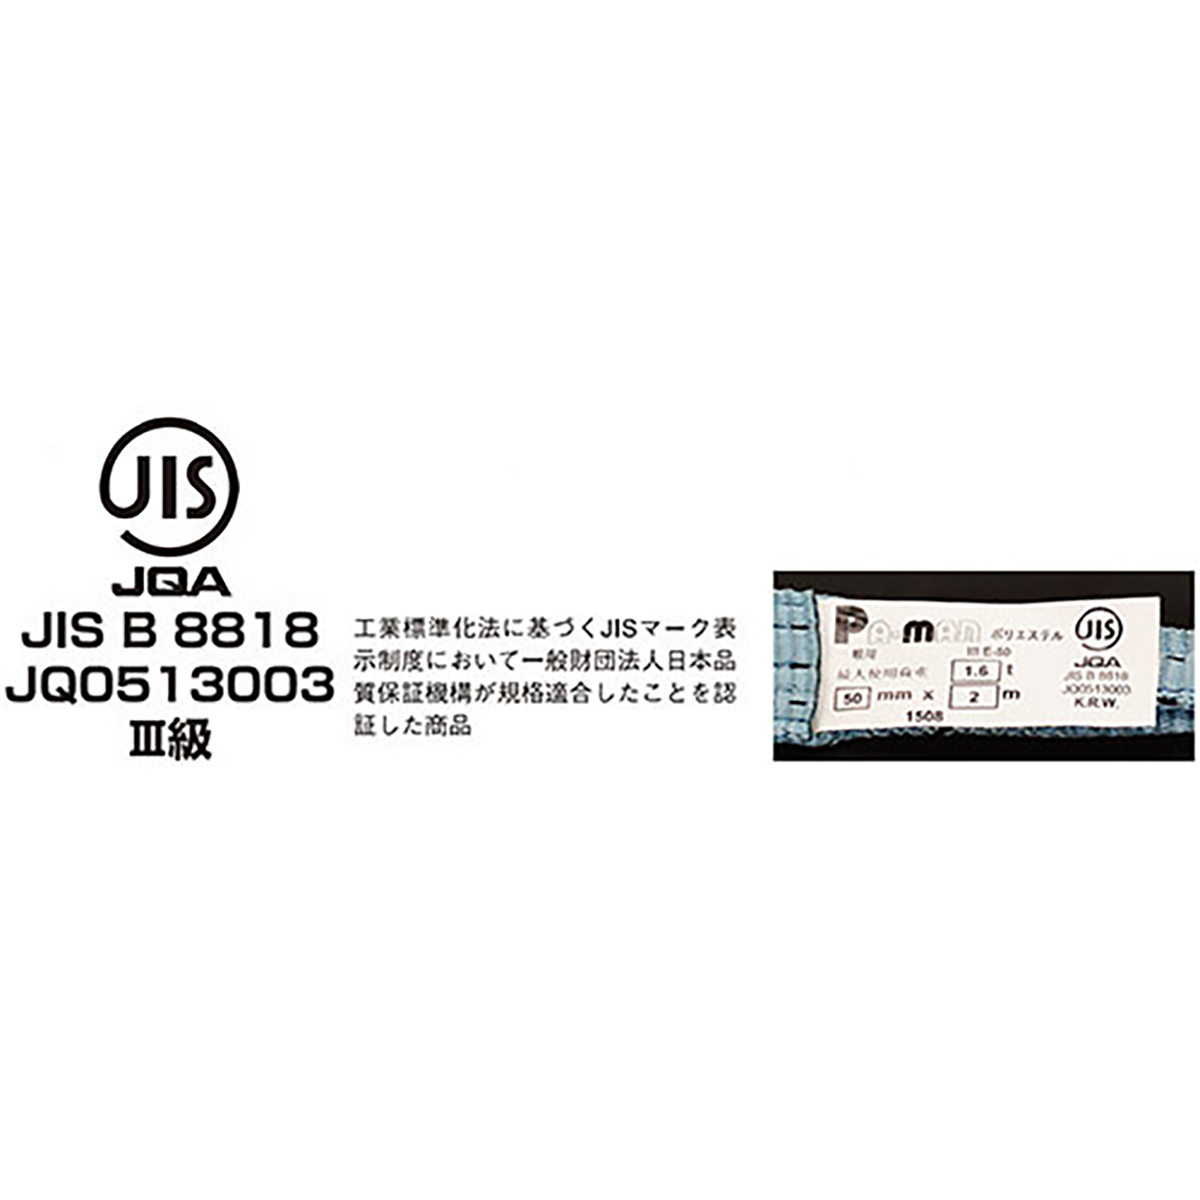 ポリベルトスリング JIS III級 ソフト面付 巾25mm 3.5m 1本